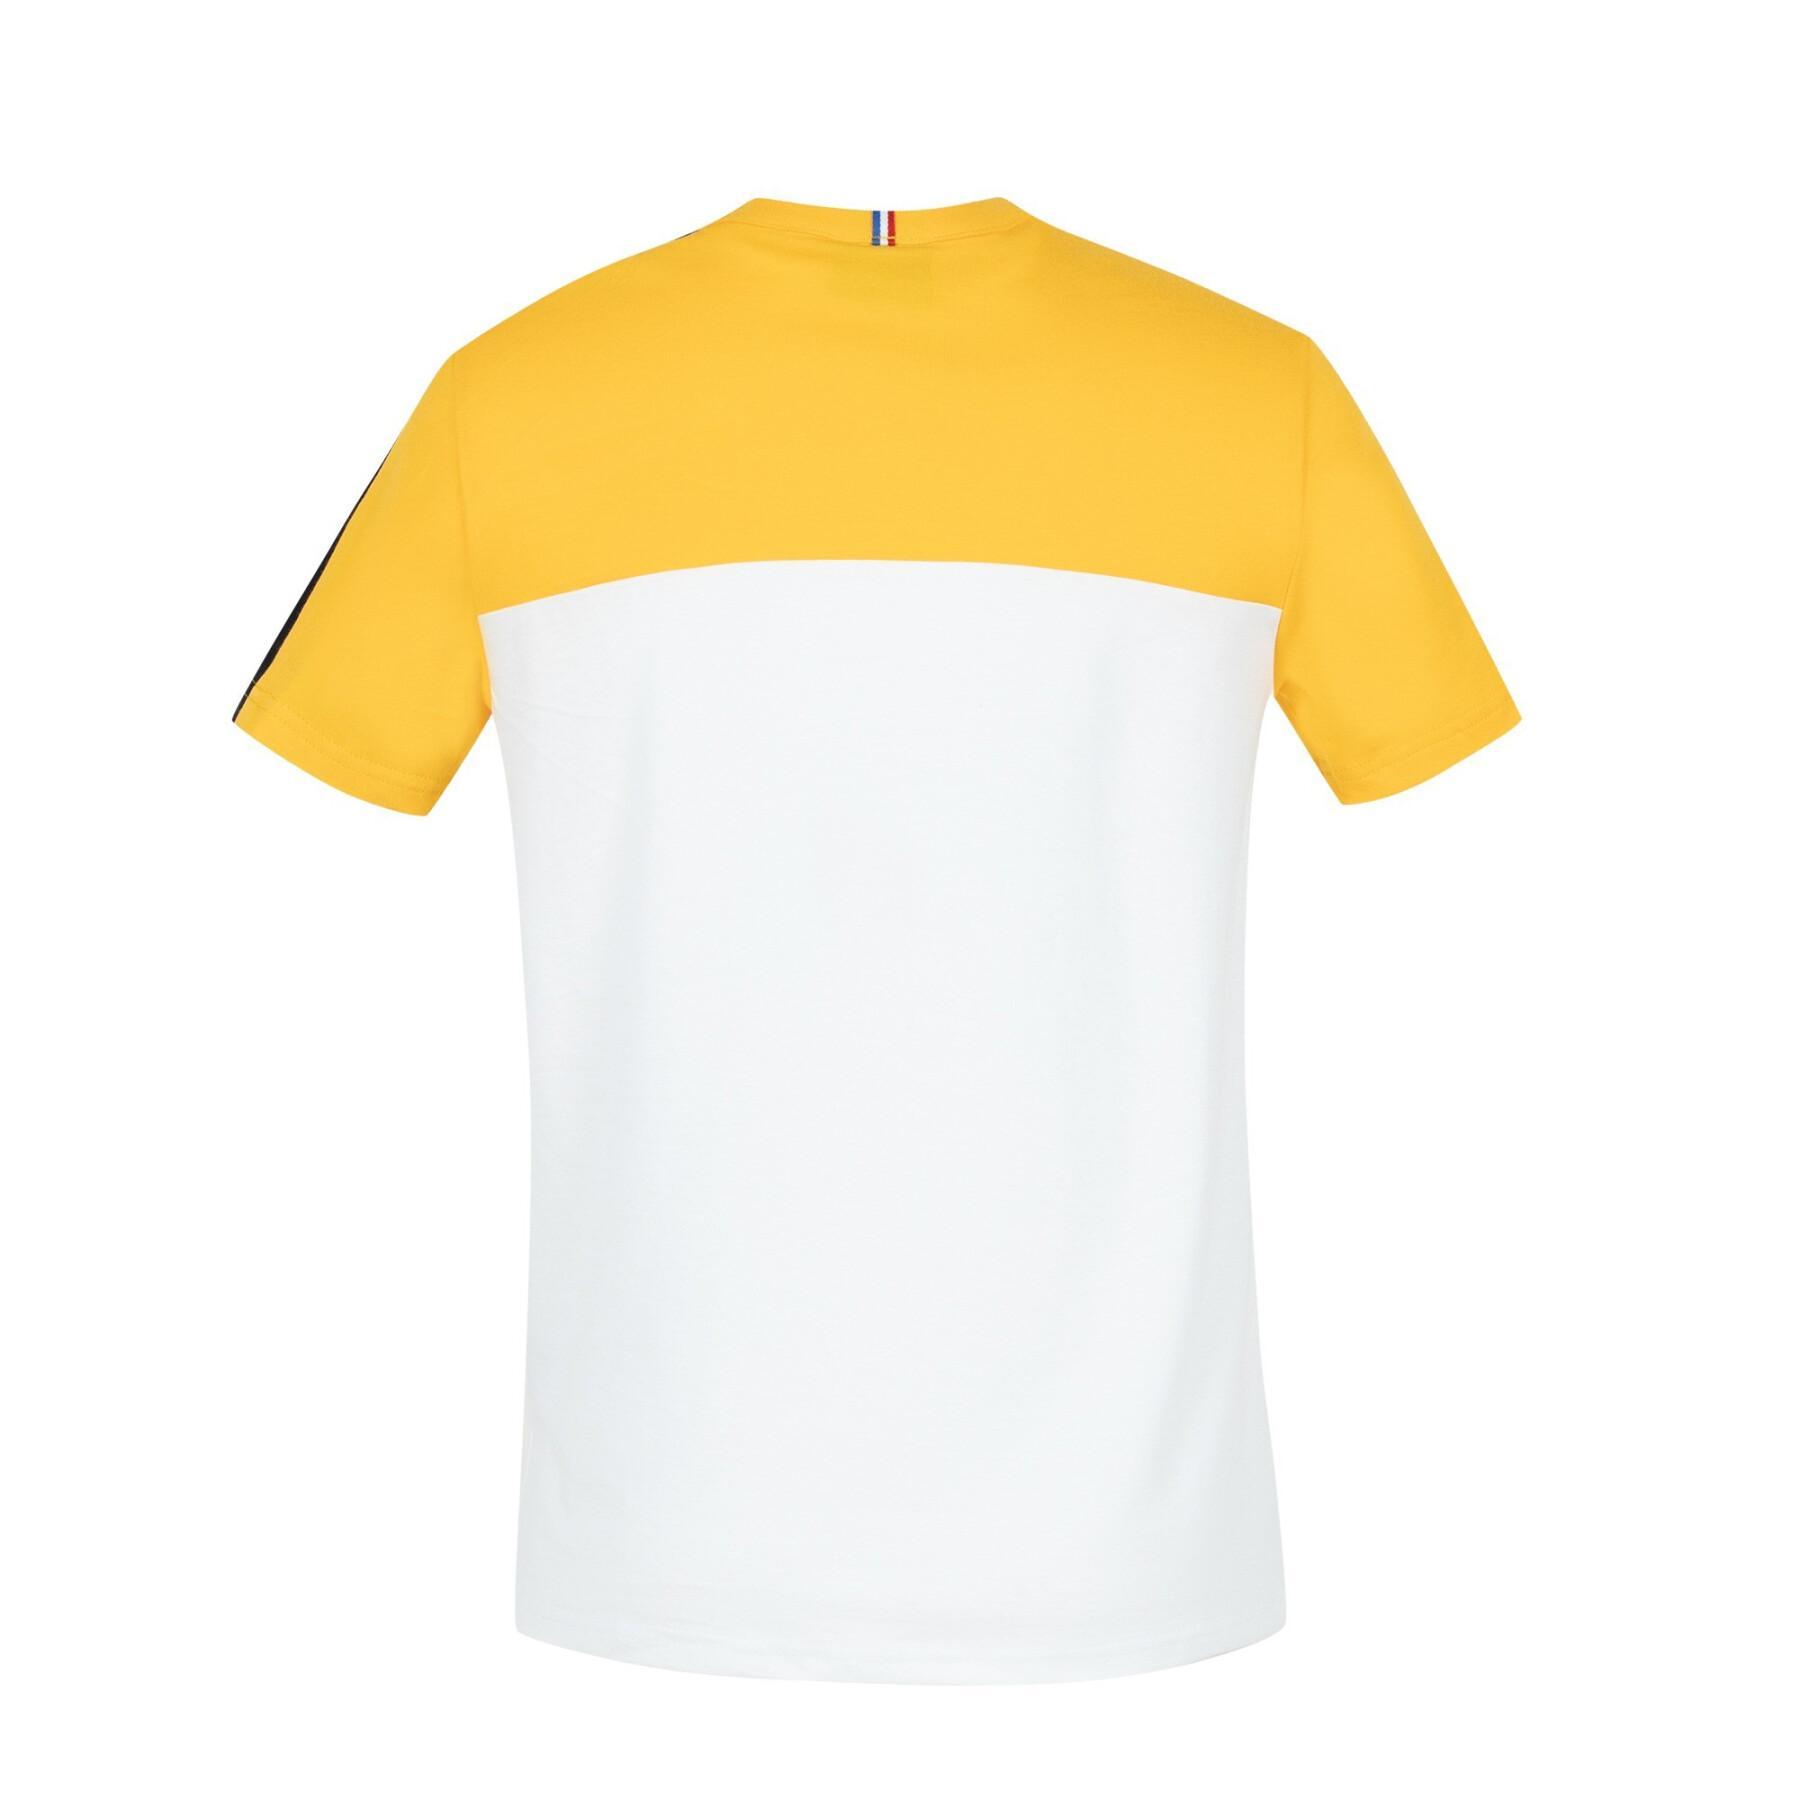 T-shirt för barn Le Coq Sportif Saison N°1